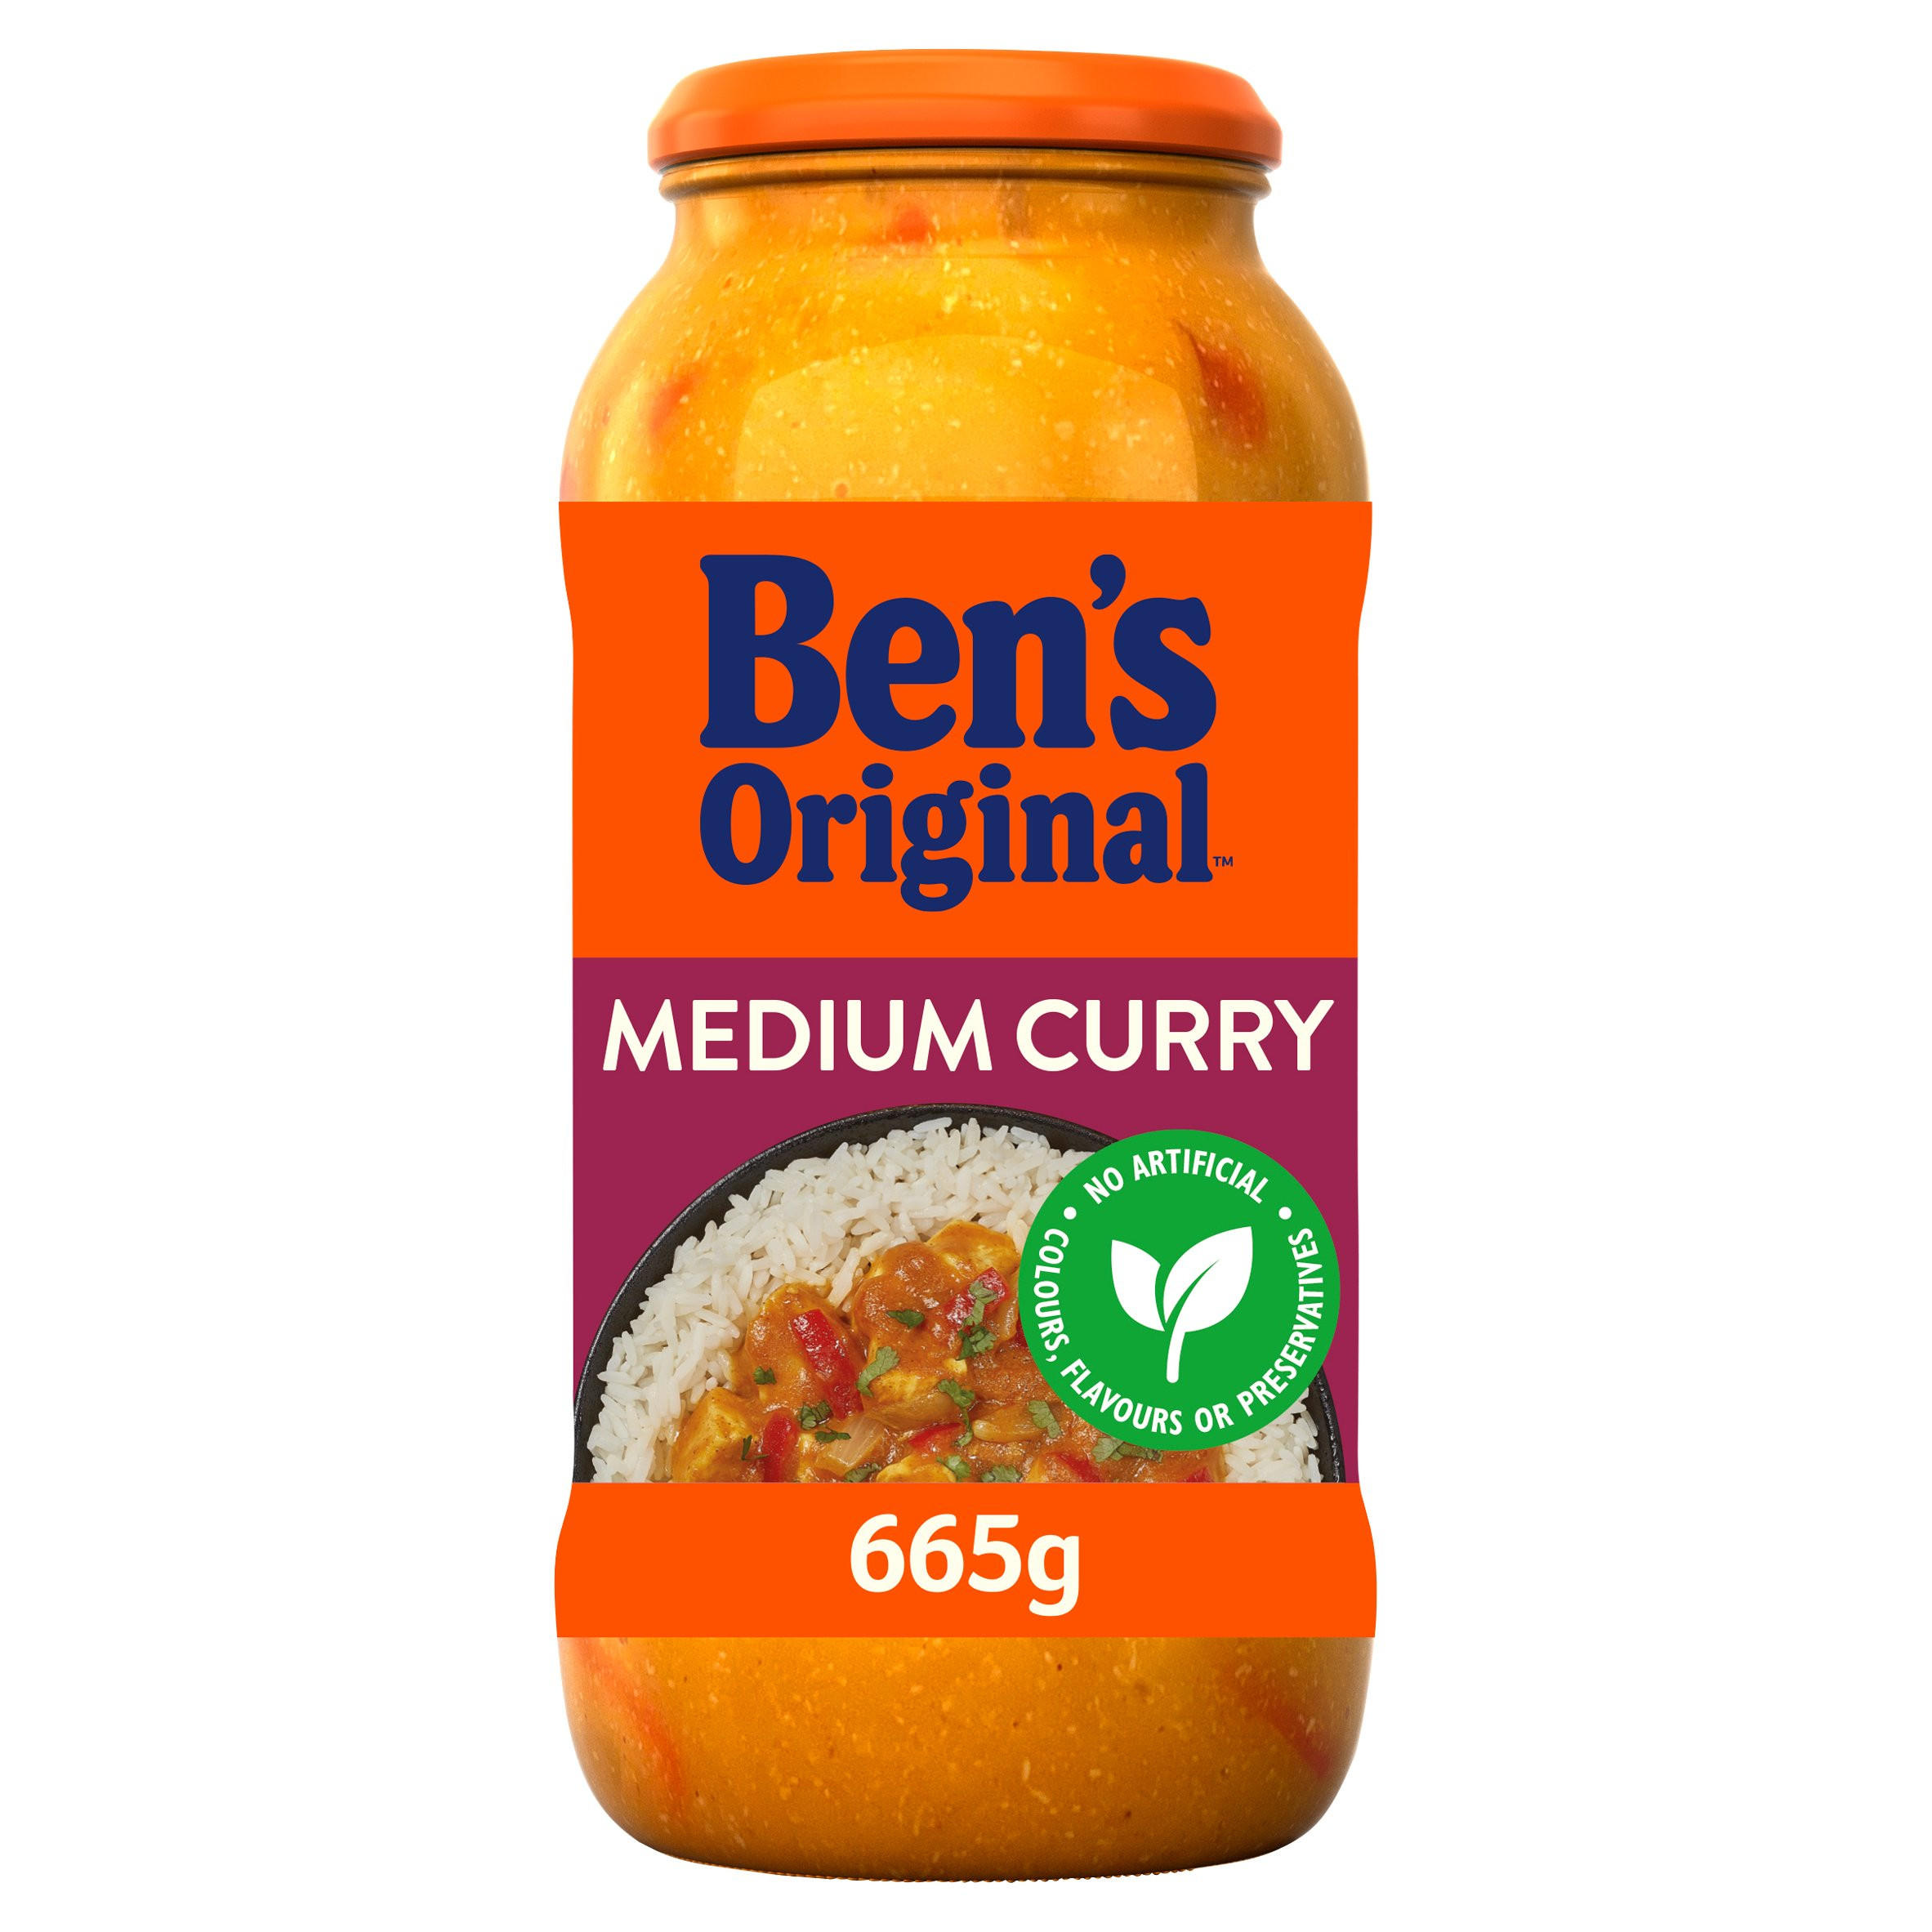 Bens Original Medium Curry Sauce 665g 62988 T1 